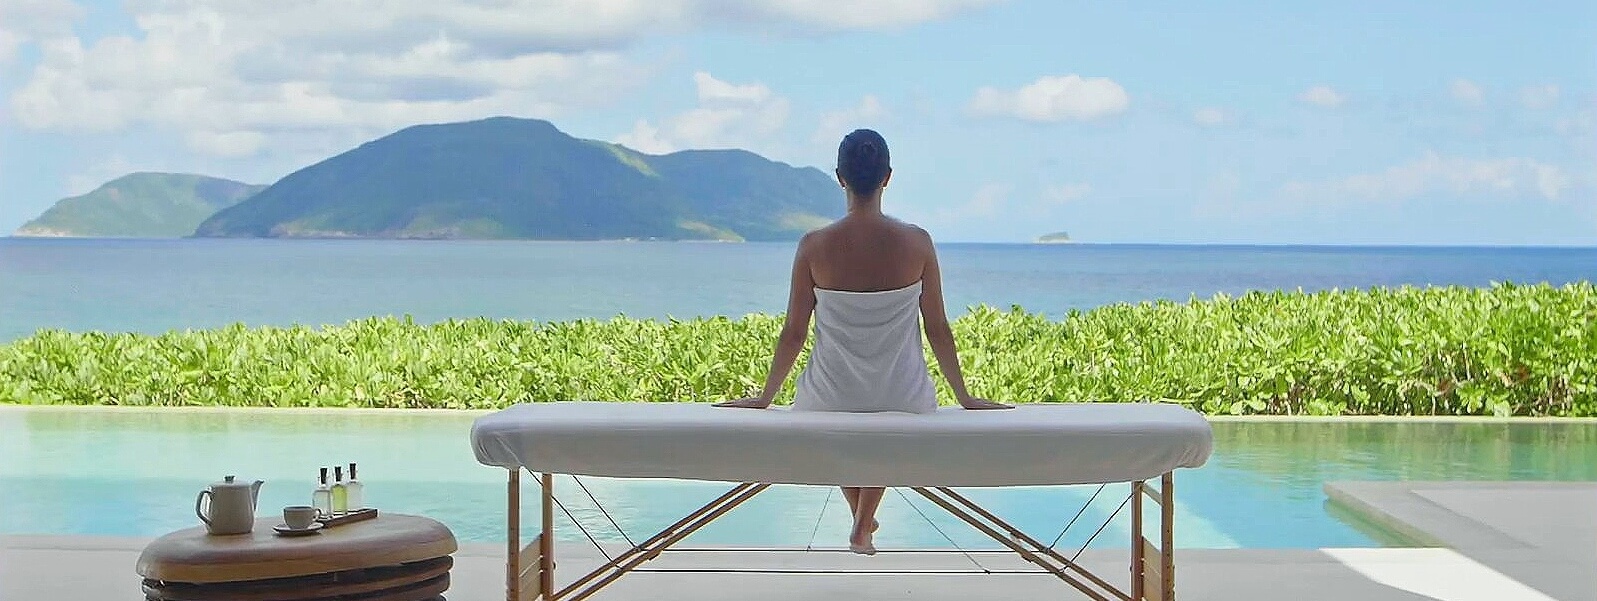 Review Six Senses Côn Đảo Resort - Lạc vào chốn thiên đường